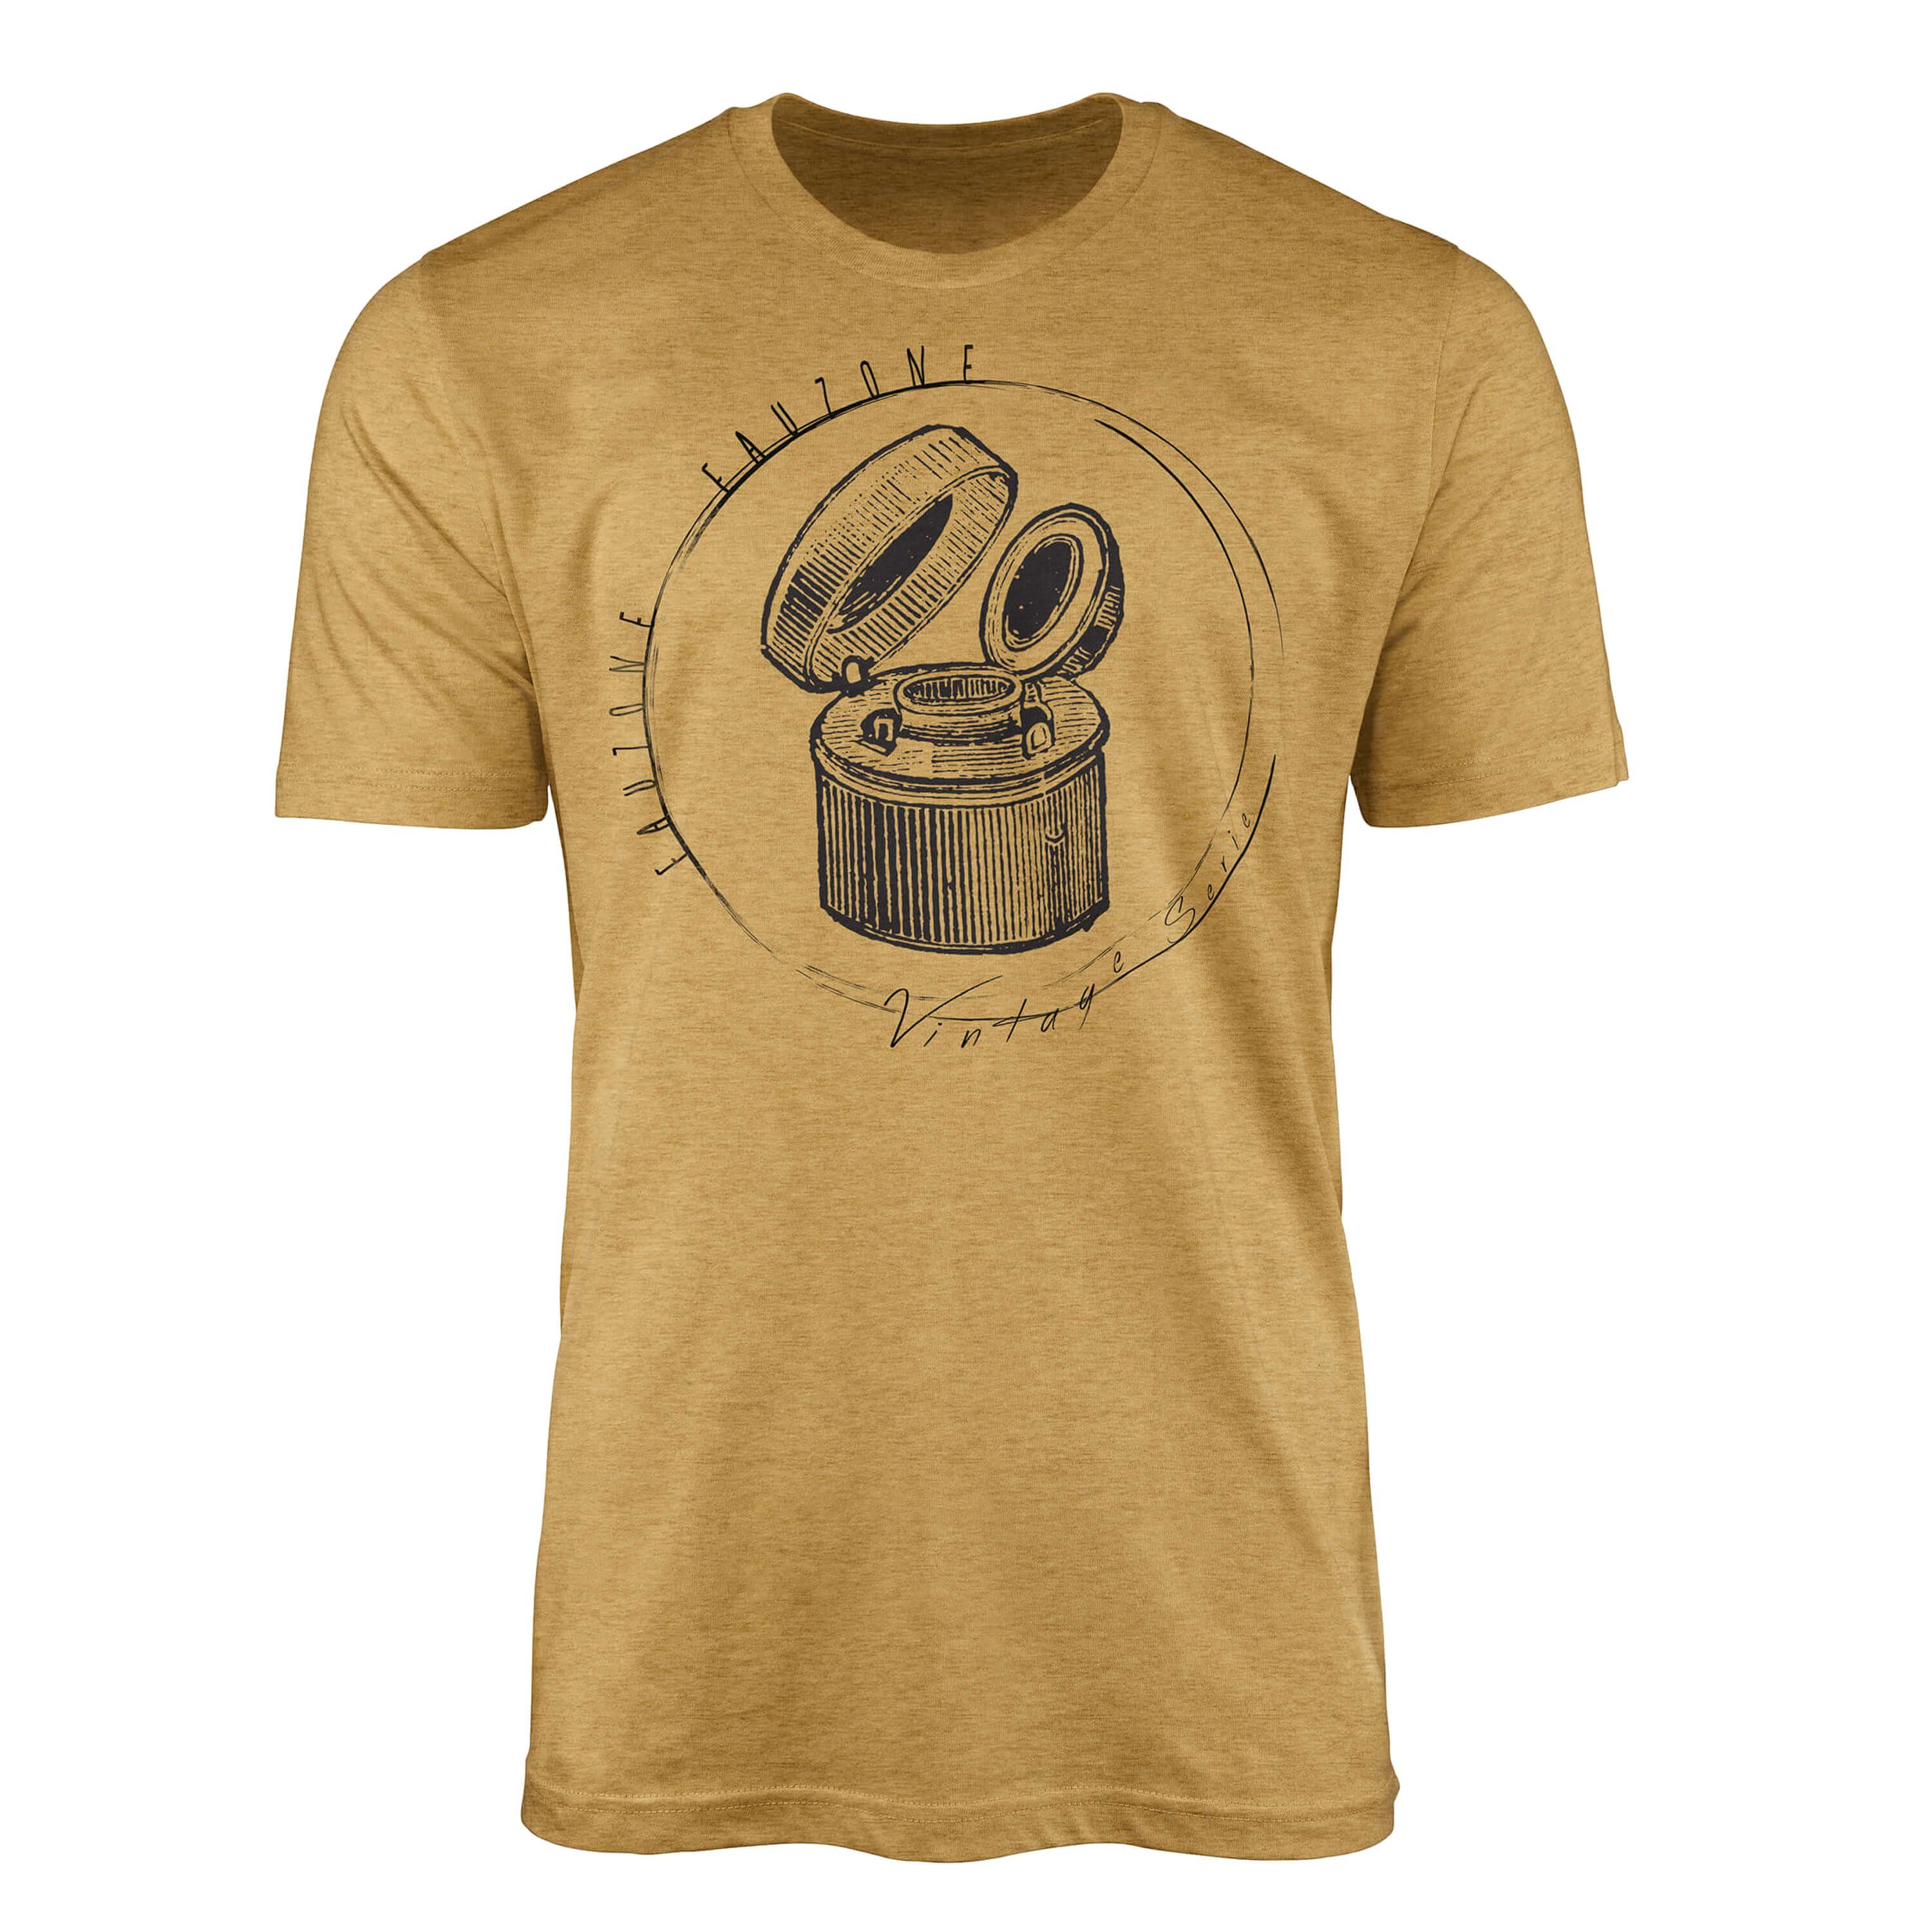 Sinus Art T-Shirt Vintage Herren T-Shirt Tintenfass Antique Gold